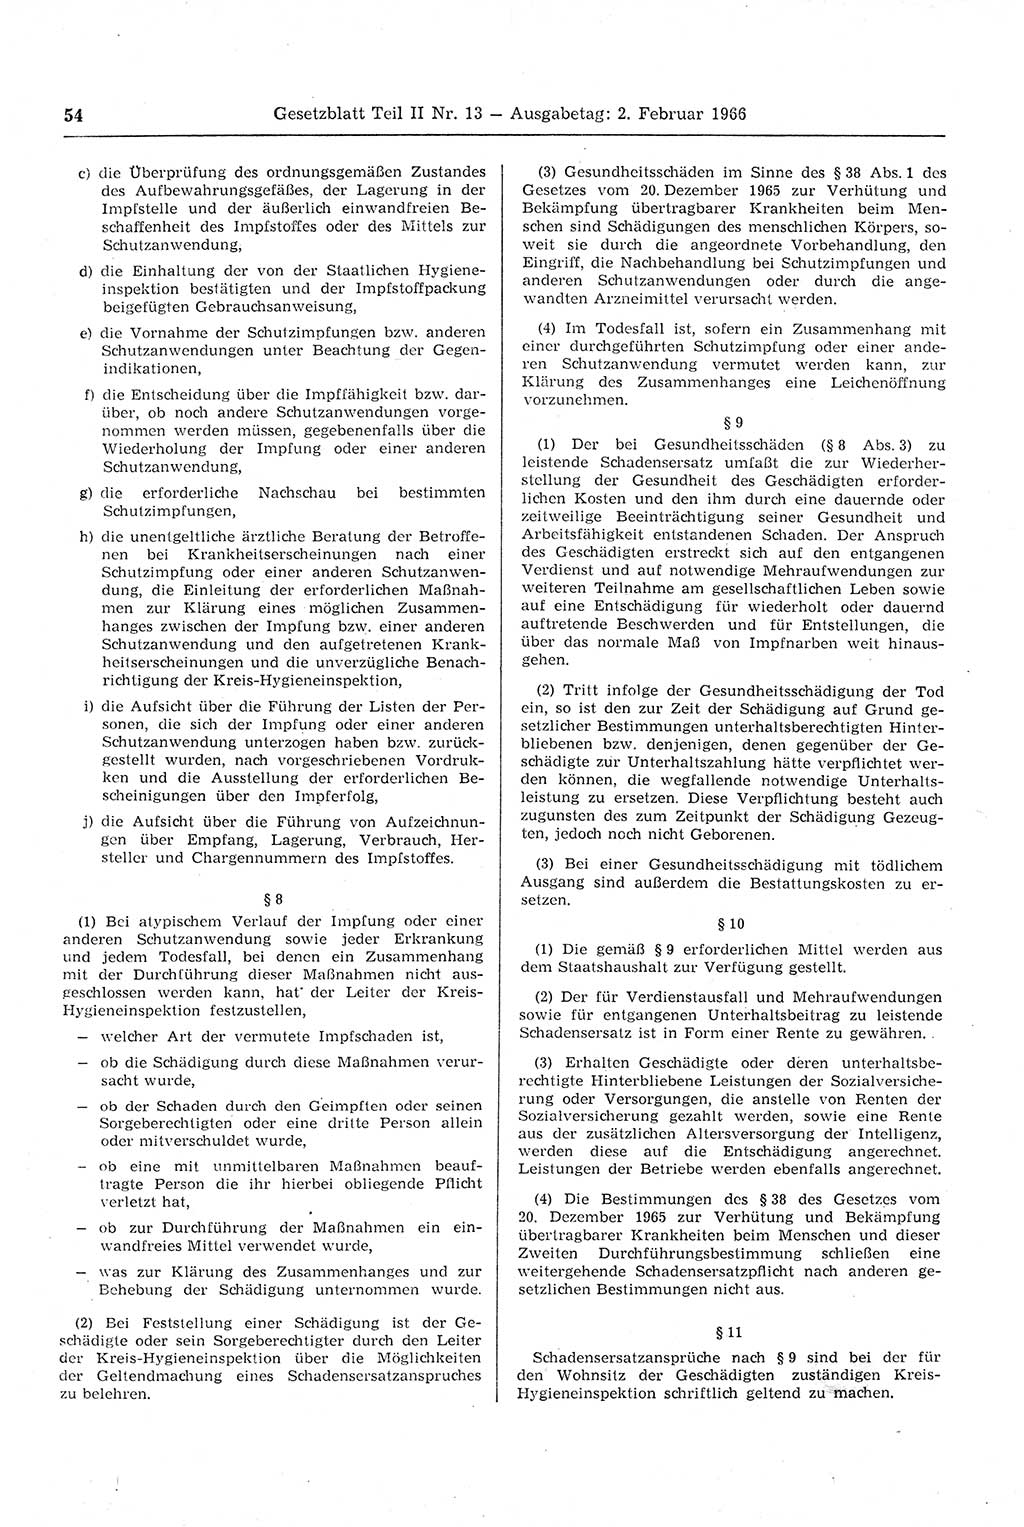 Gesetzblatt (GBl.) der Deutschen Demokratischen Republik (DDR) Teil ⅠⅠ 1966, Seite 54 (GBl. DDR ⅠⅠ 1966, S. 54)